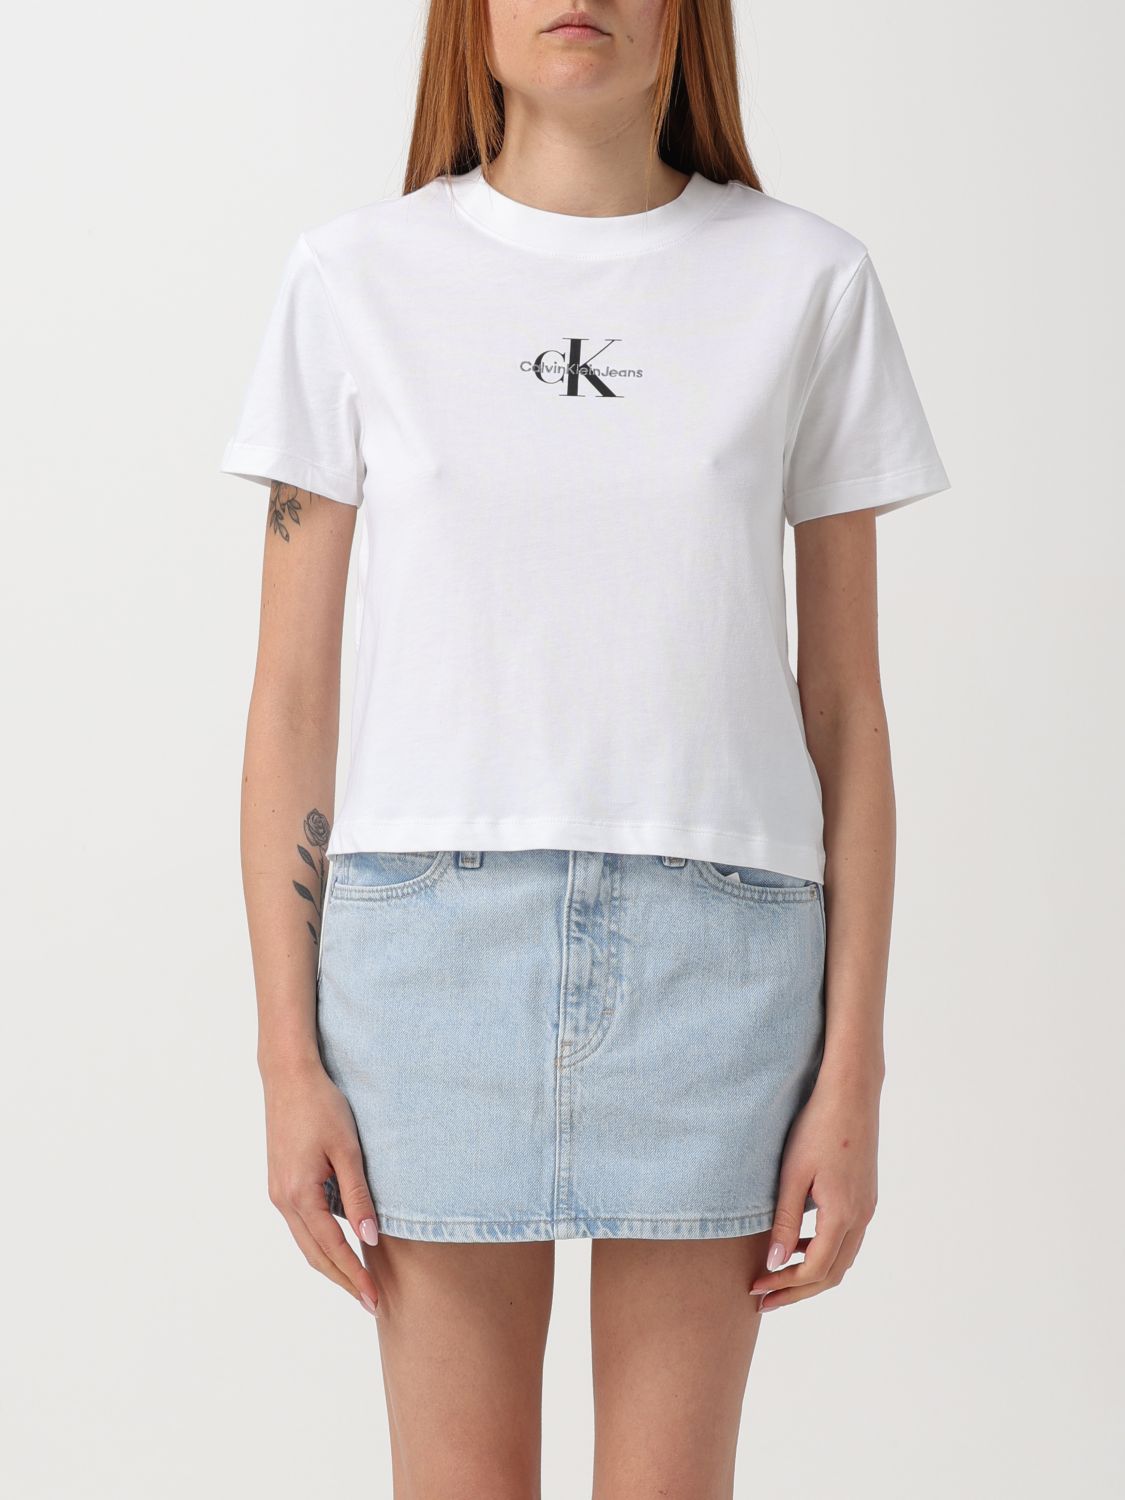 Ck Jeans T-Shirt CK JEANS Woman color White